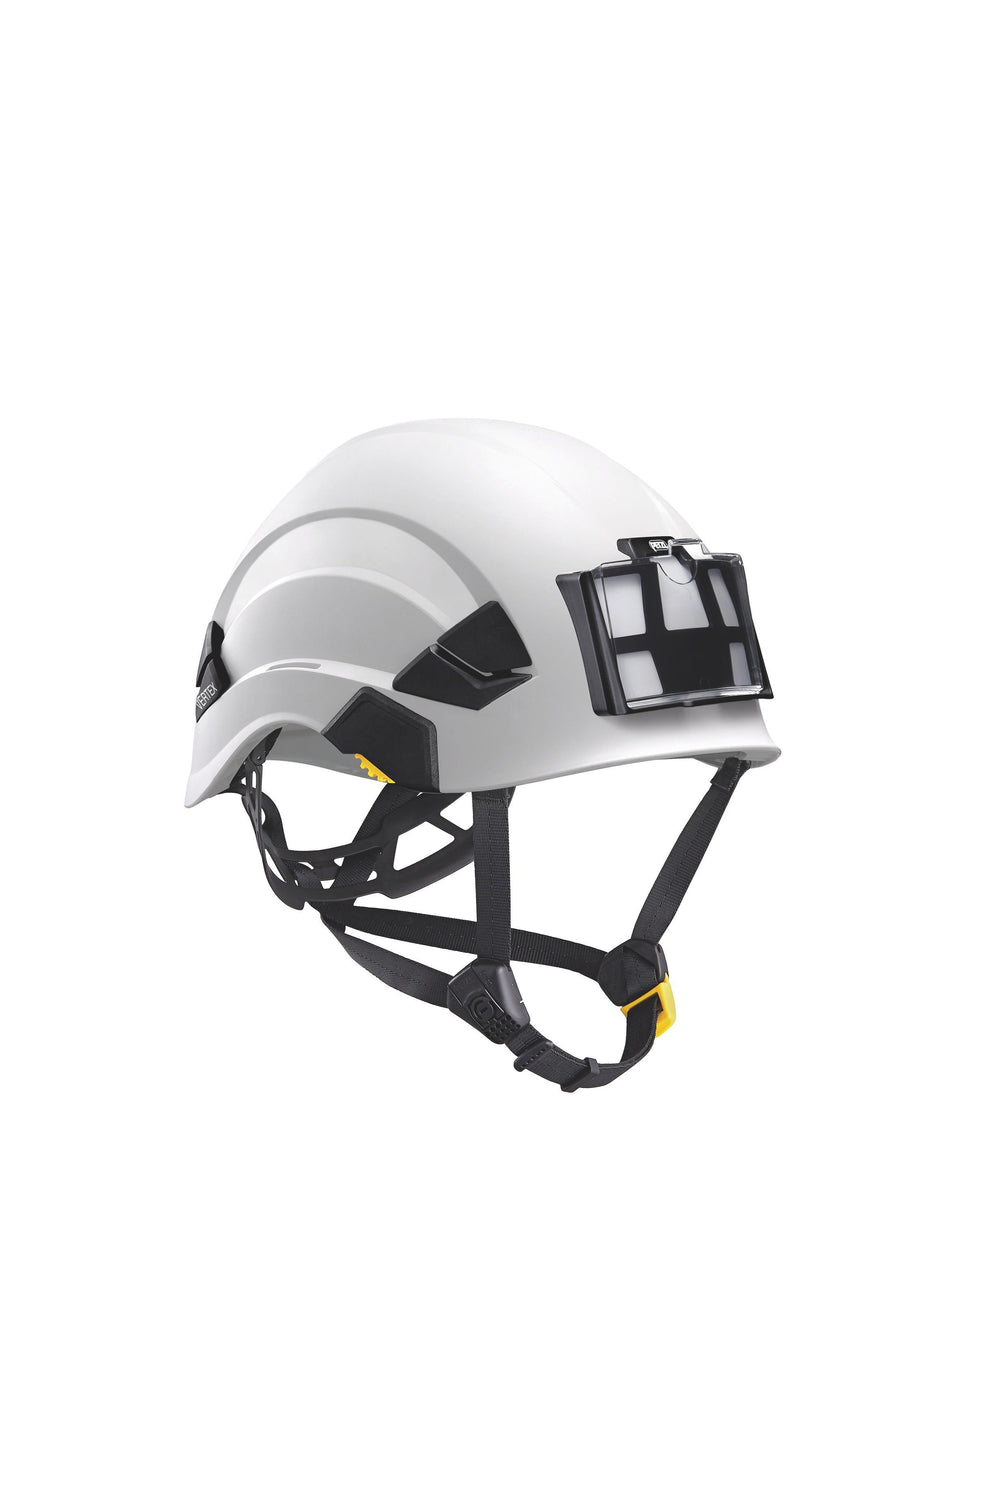 Petzl - Nametag Holder for Vertex and Strato Helmets